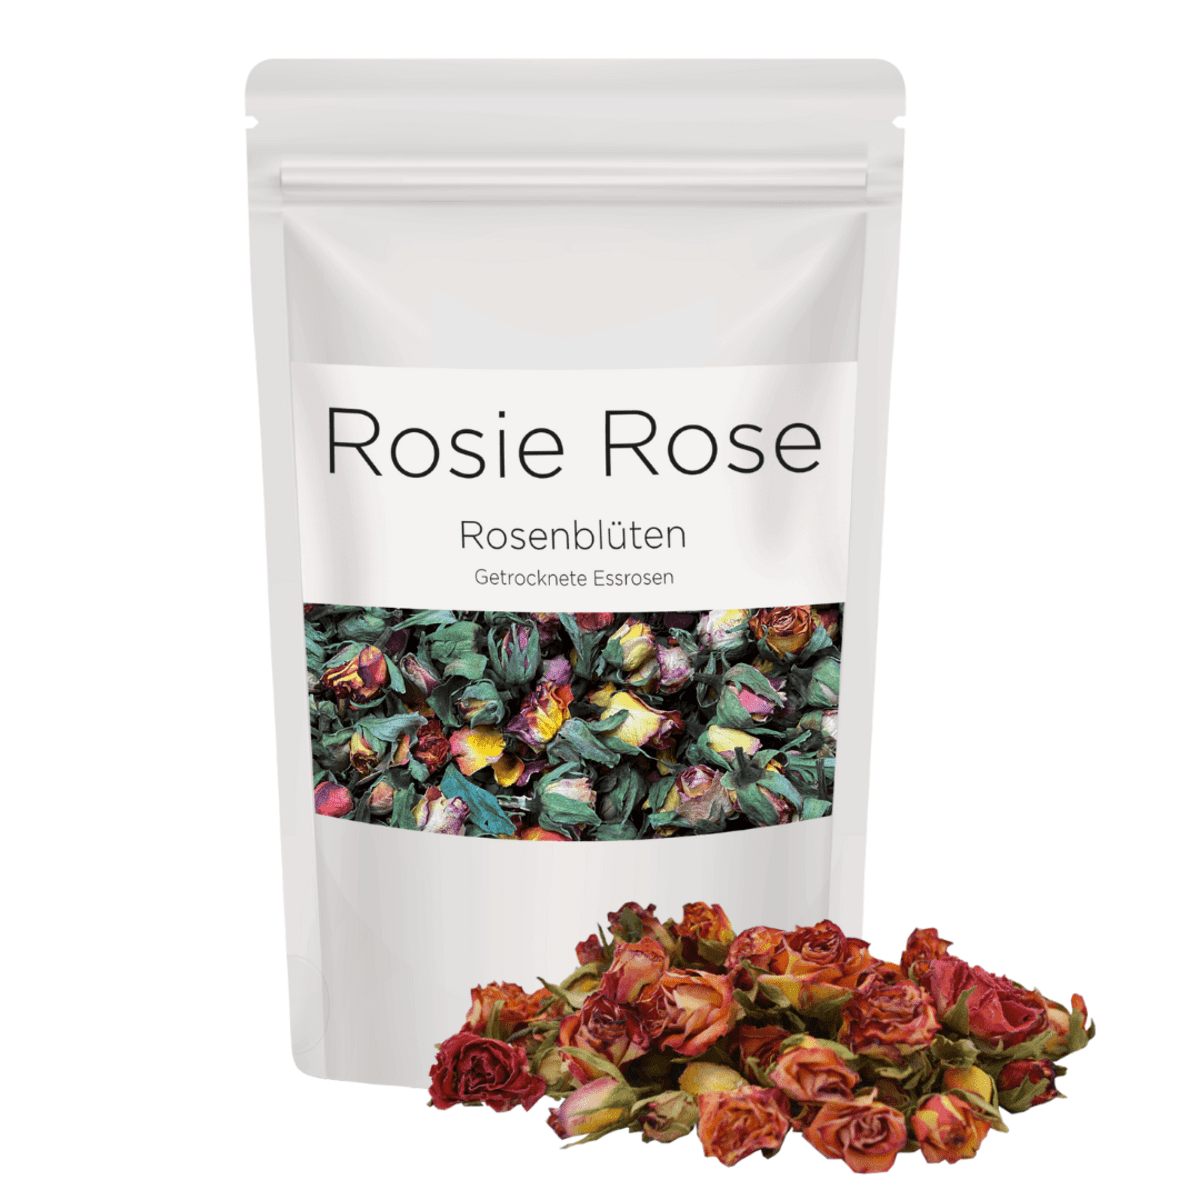 Verschönern Sie Ihre Gastro-Kreationen mit unseren essbaren Vintage Rose Blüten in Hell Rosa als einzigartige Tortendeko. Unsere getrockneten Blüten sind perfekt für Torten oder Gebäcke in größeren Mengen und Setzen stilvolle Akzente. Von ROSIE ROSE im Online-Shop kaufen